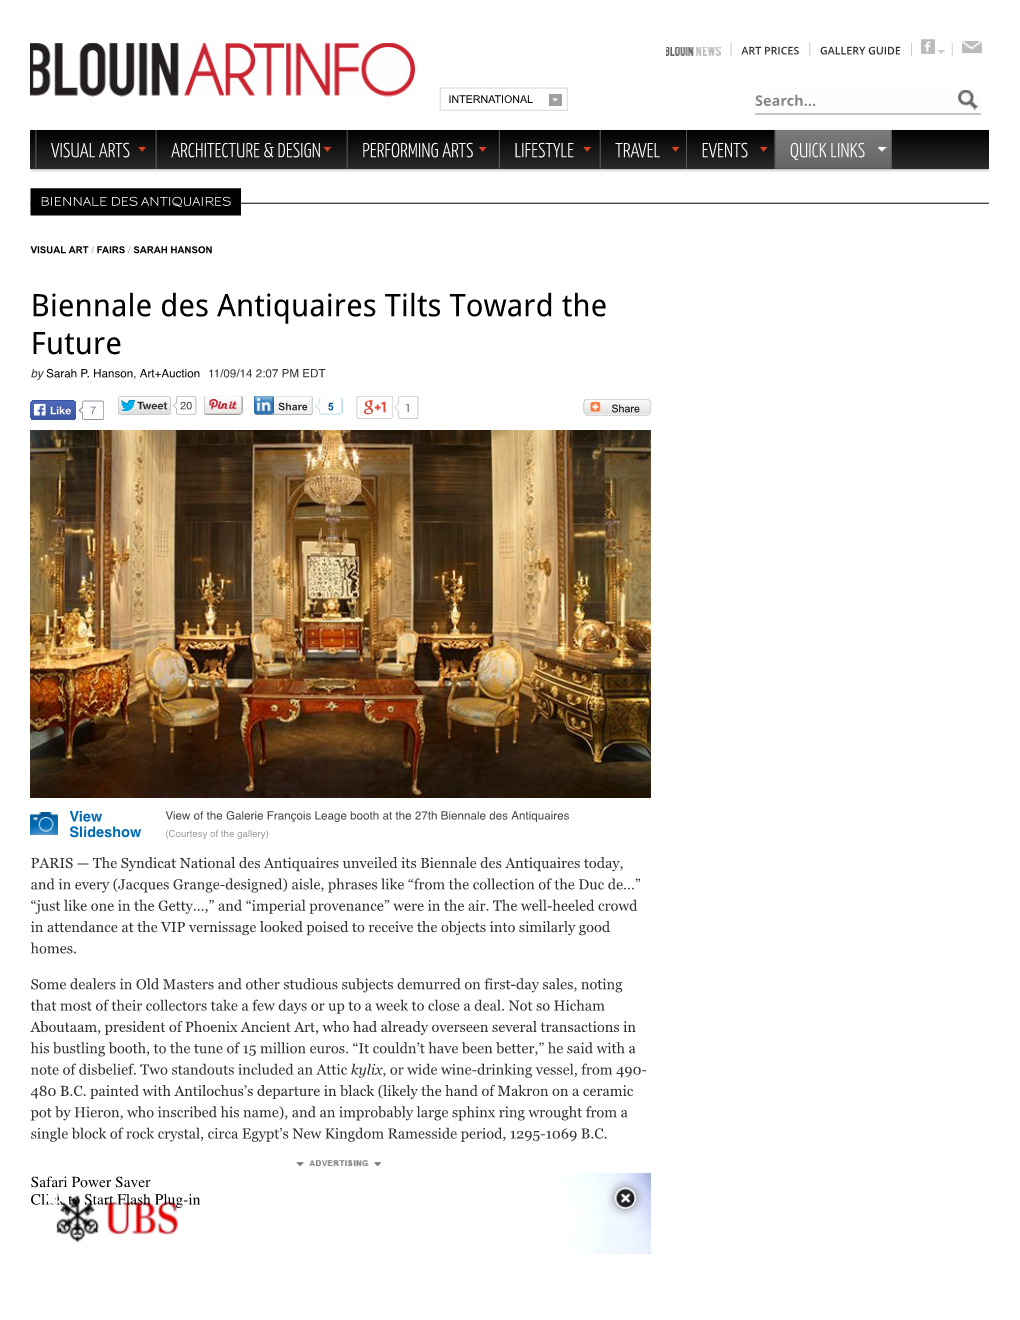 Biennale Des Antiquaires Tilts Toward the Future by Sarah P